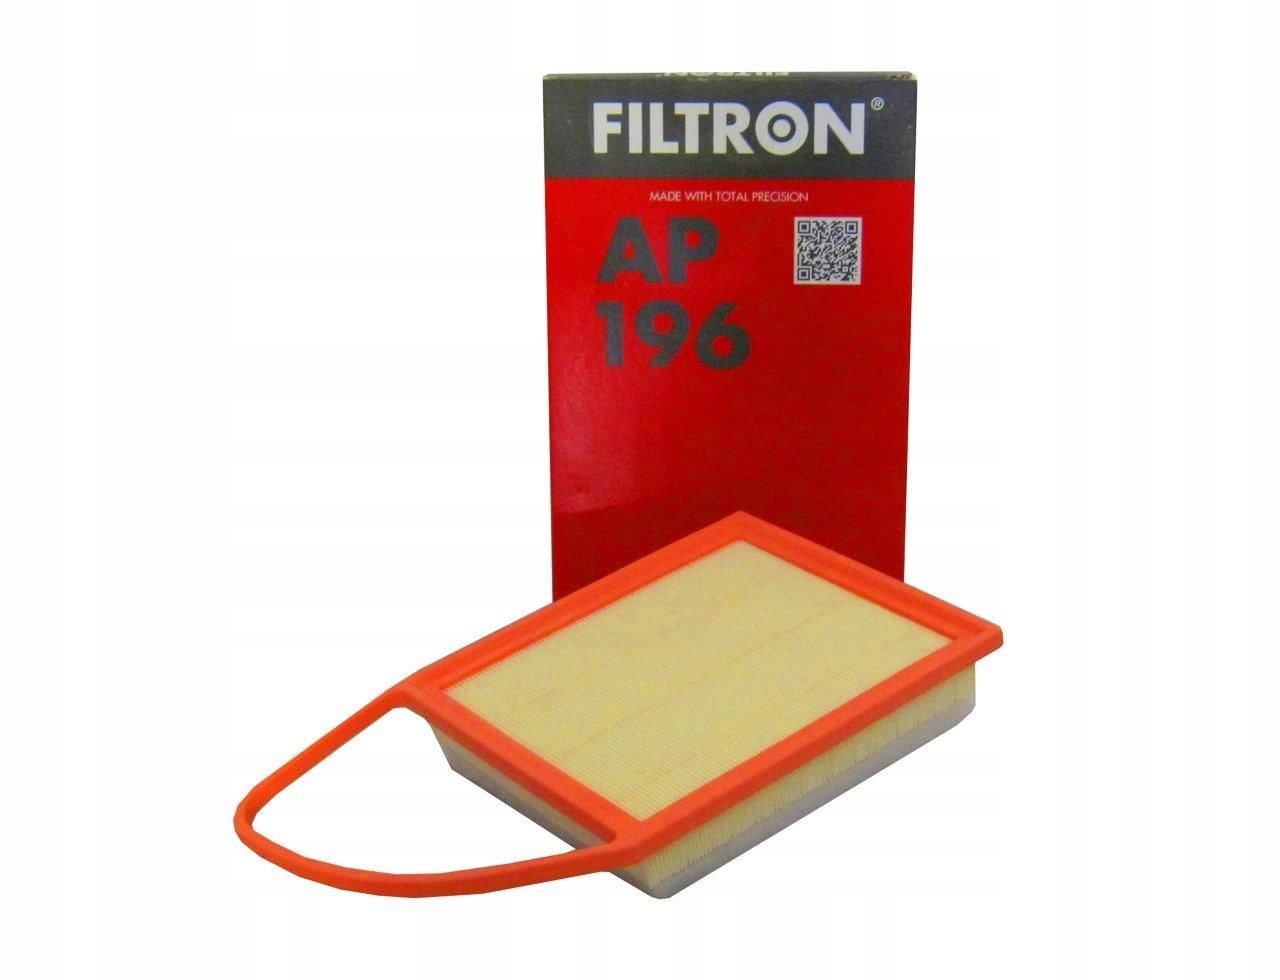 Citroen C4 Picasso 1.6 Hdi Dizel Euro5 Hava Filtresi Filtron Marka